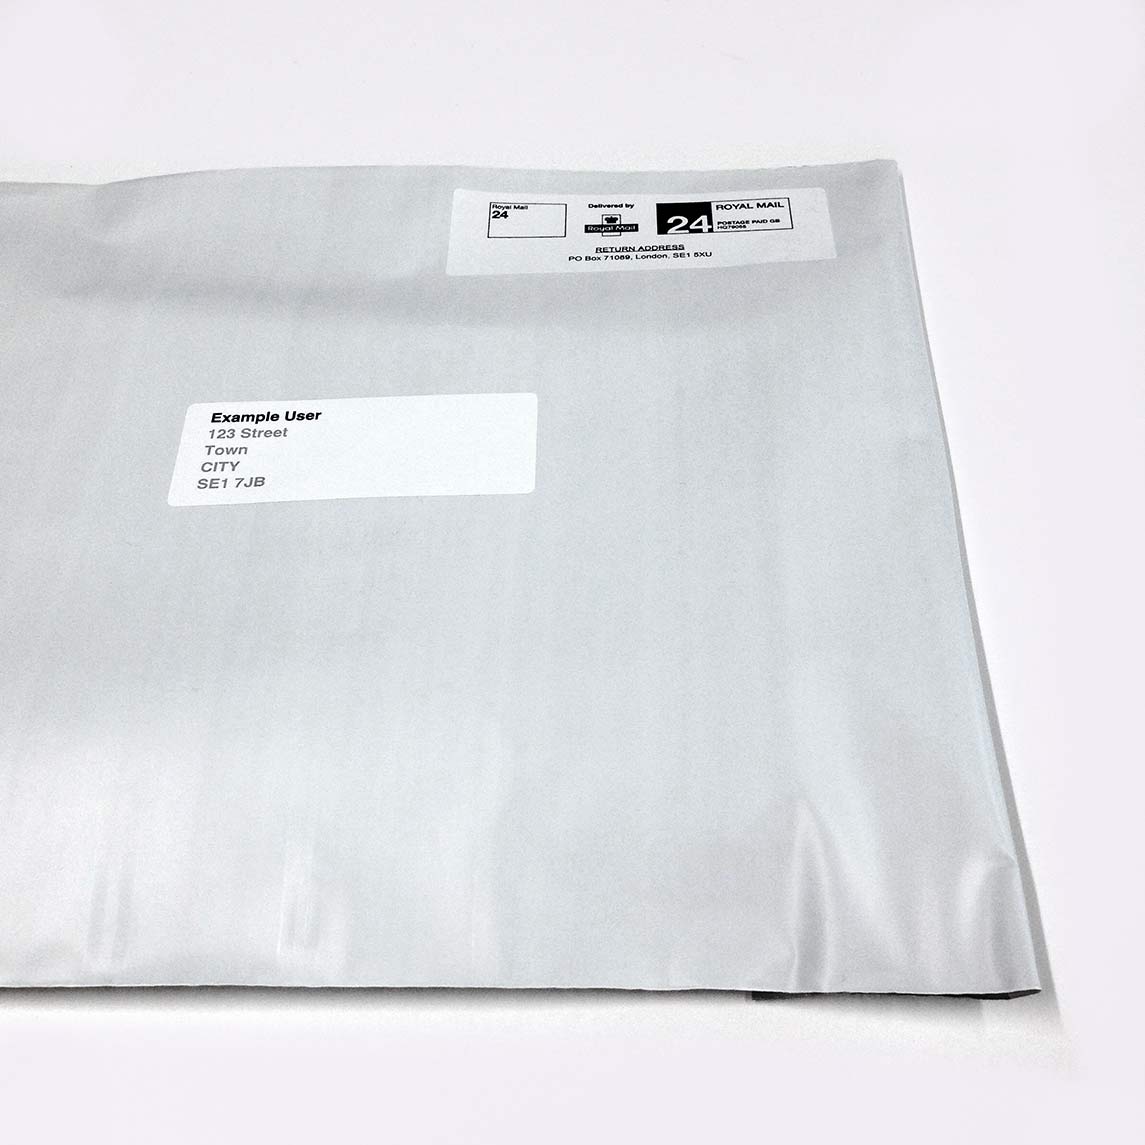 Discreet, tamper proof, unmarked envelope - genital treatment package